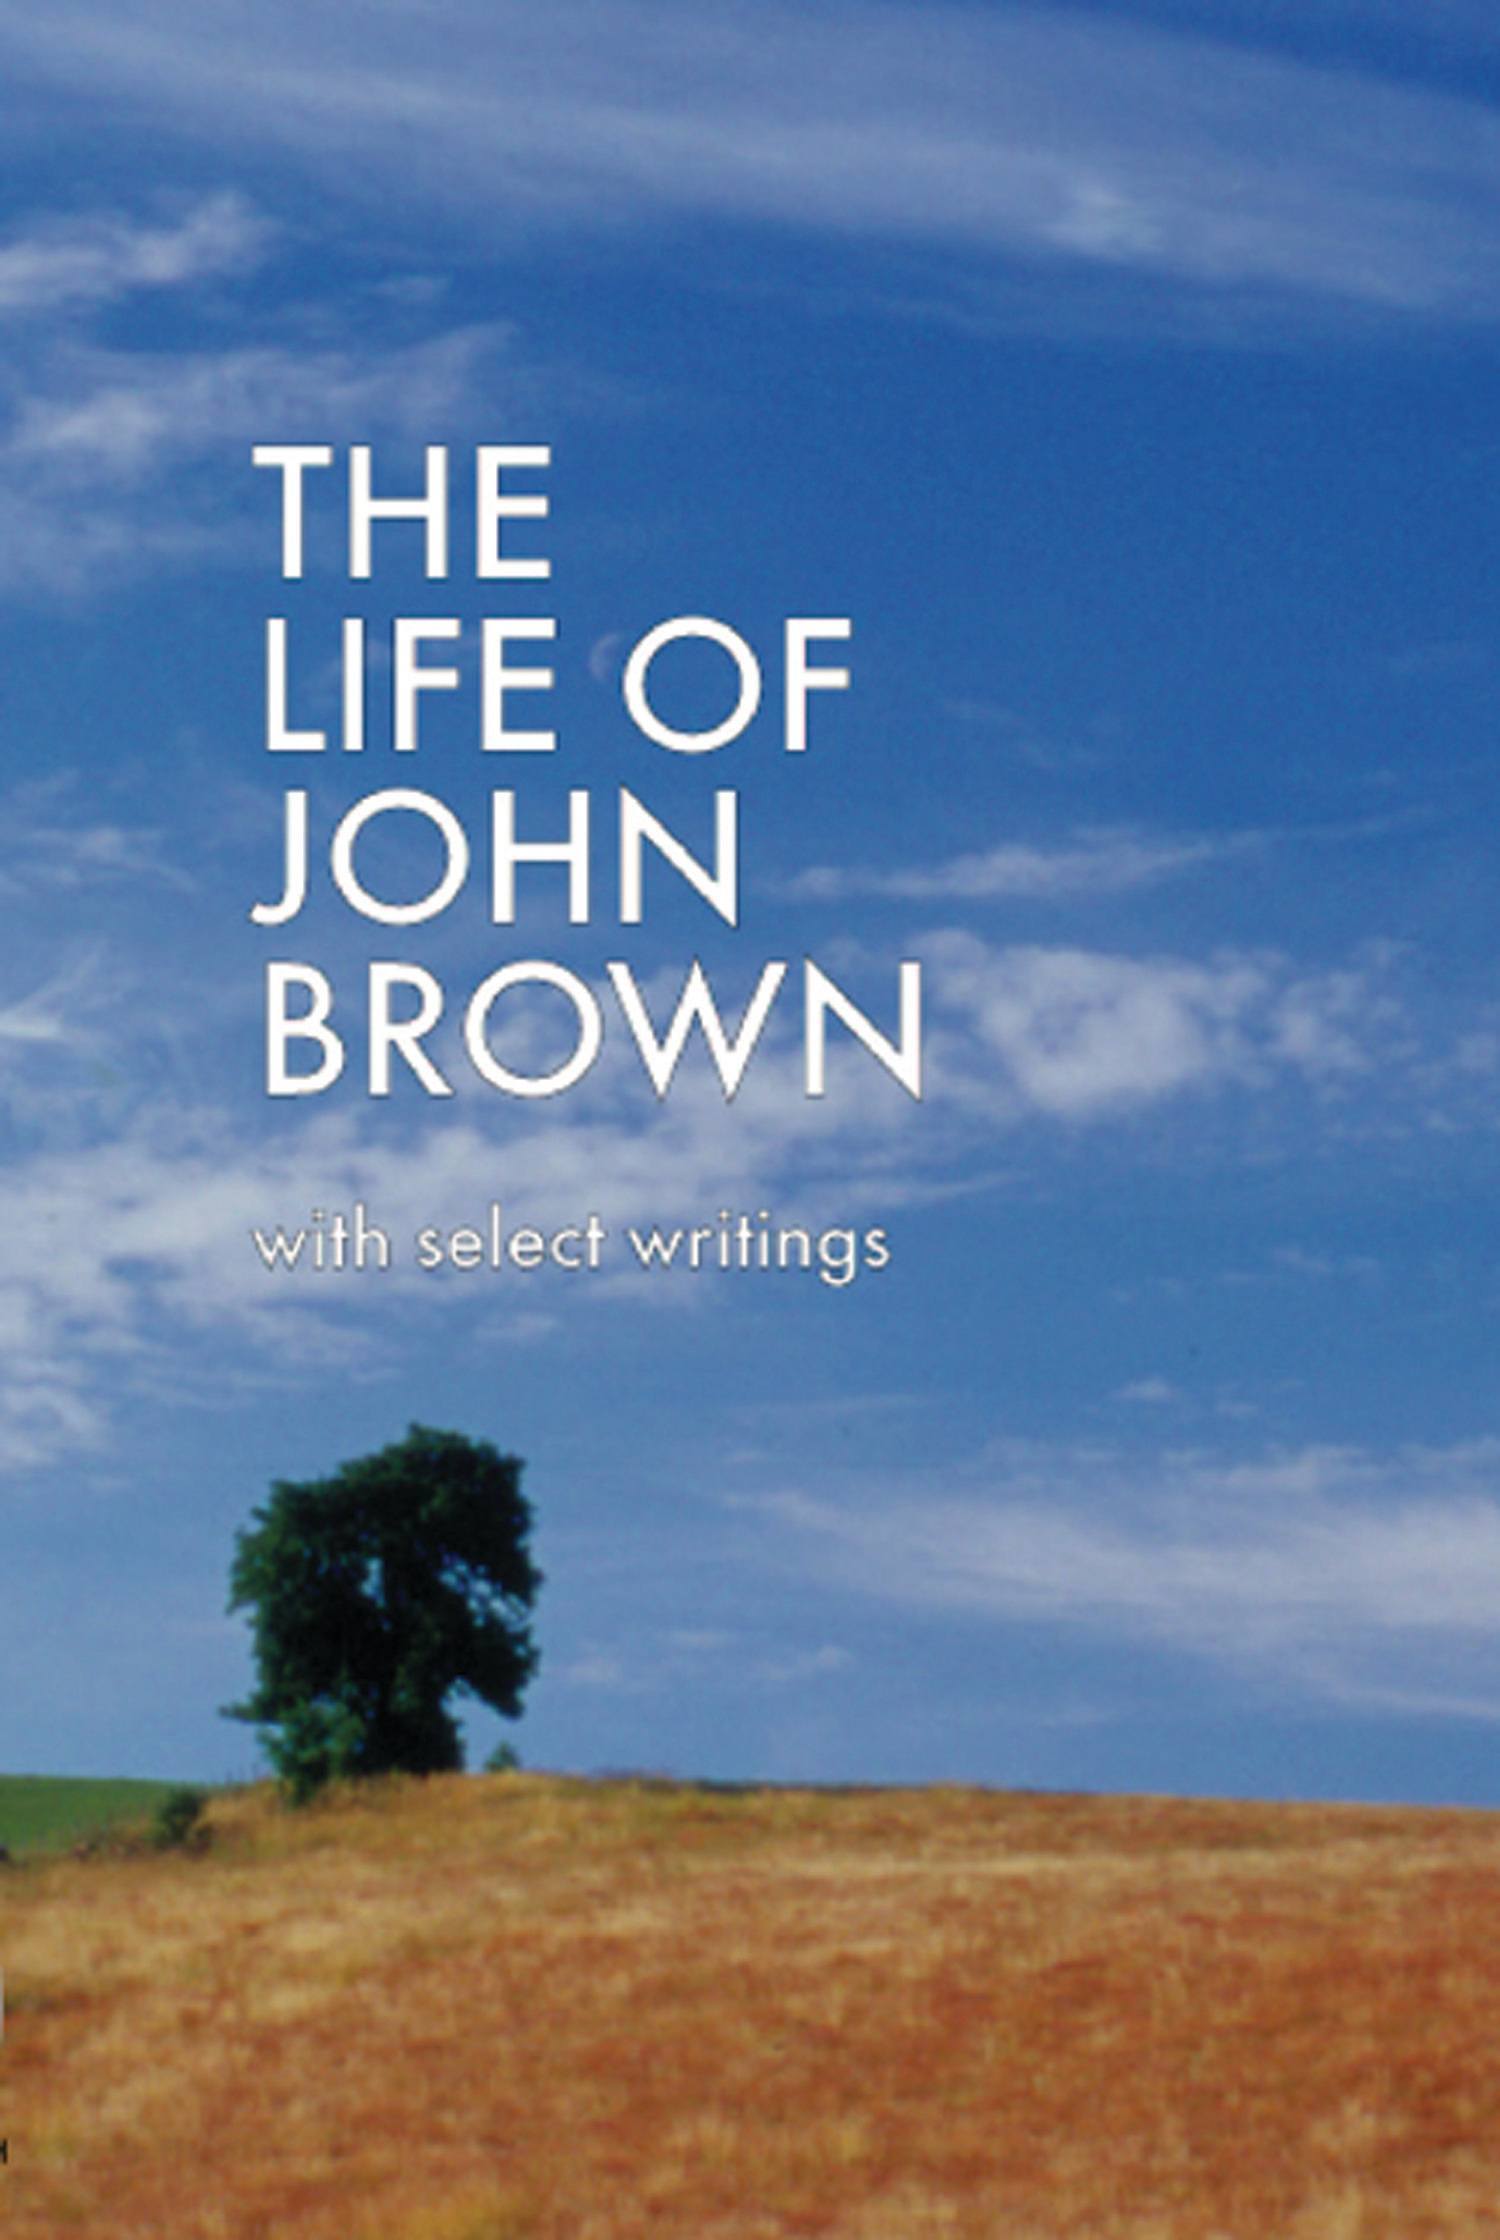 Life of John Brown